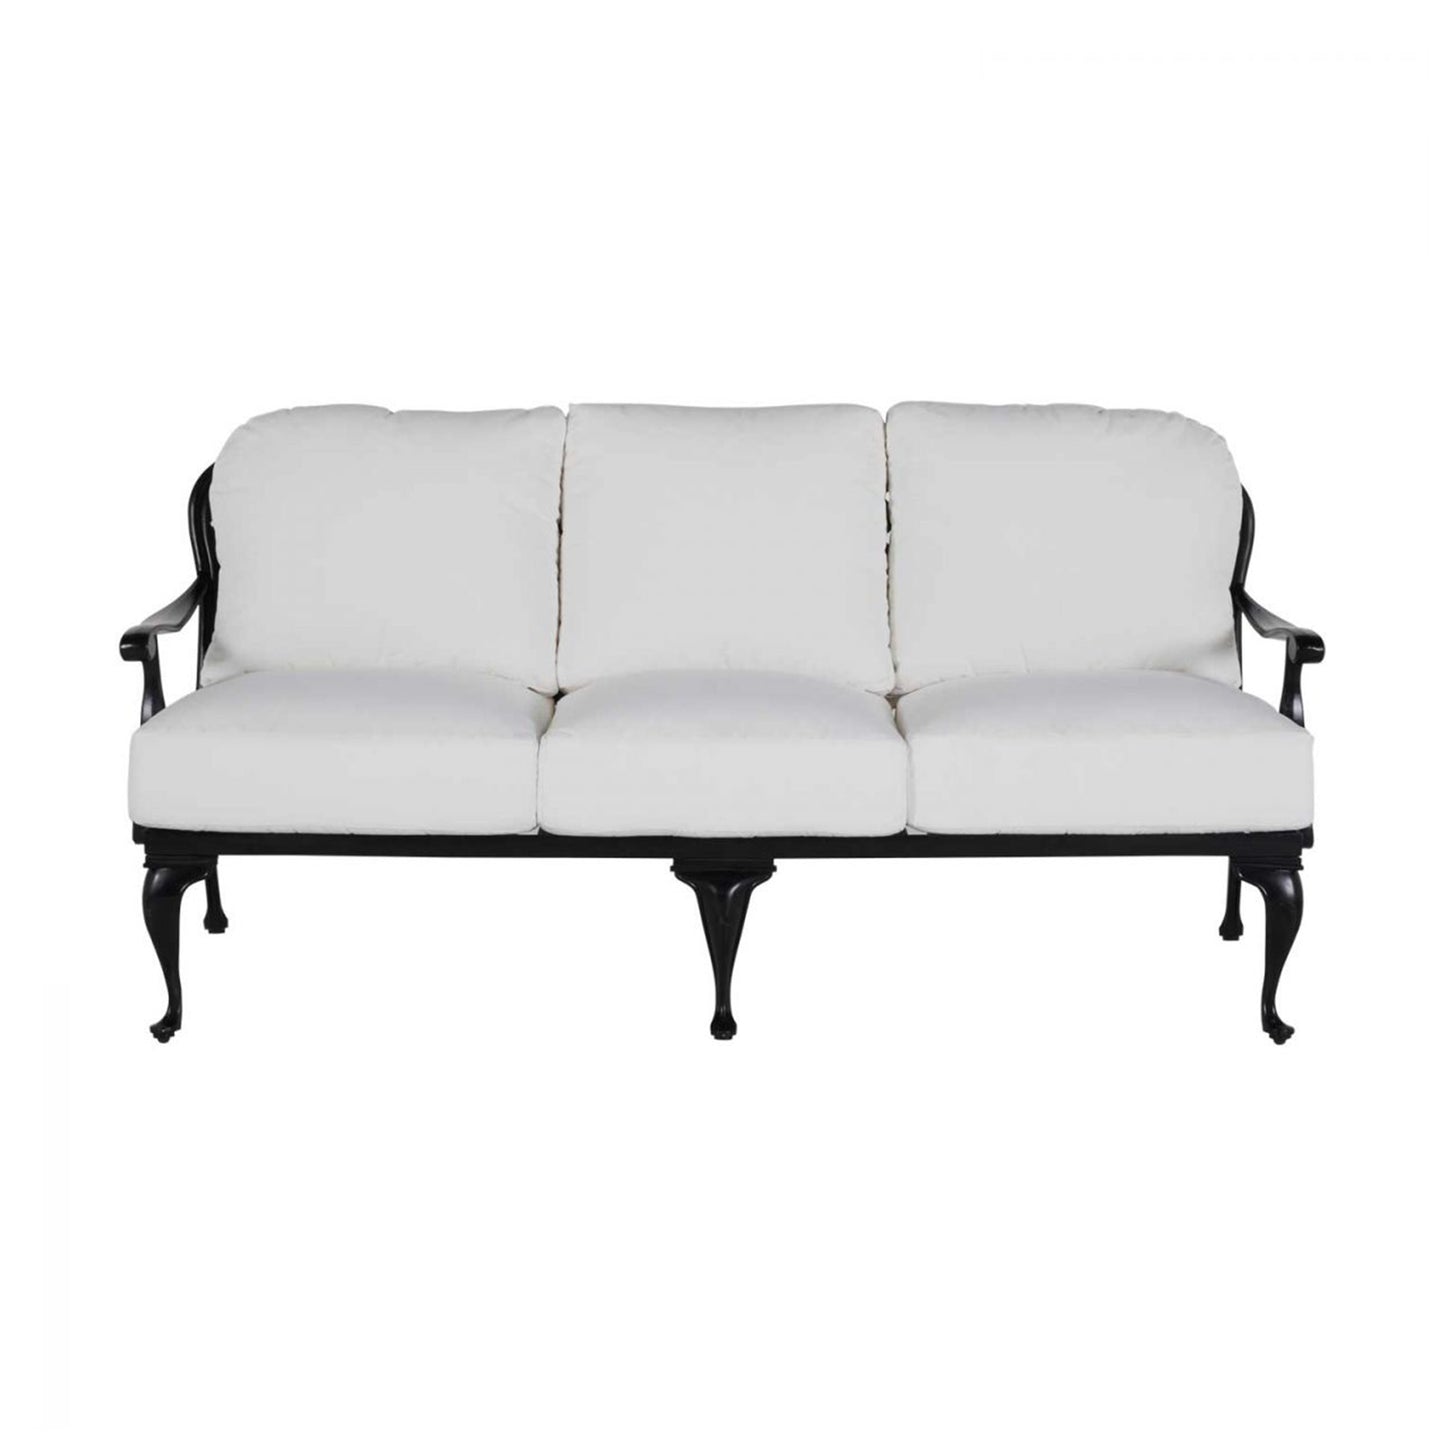 Summer Classics Provance Aluminum Sofa